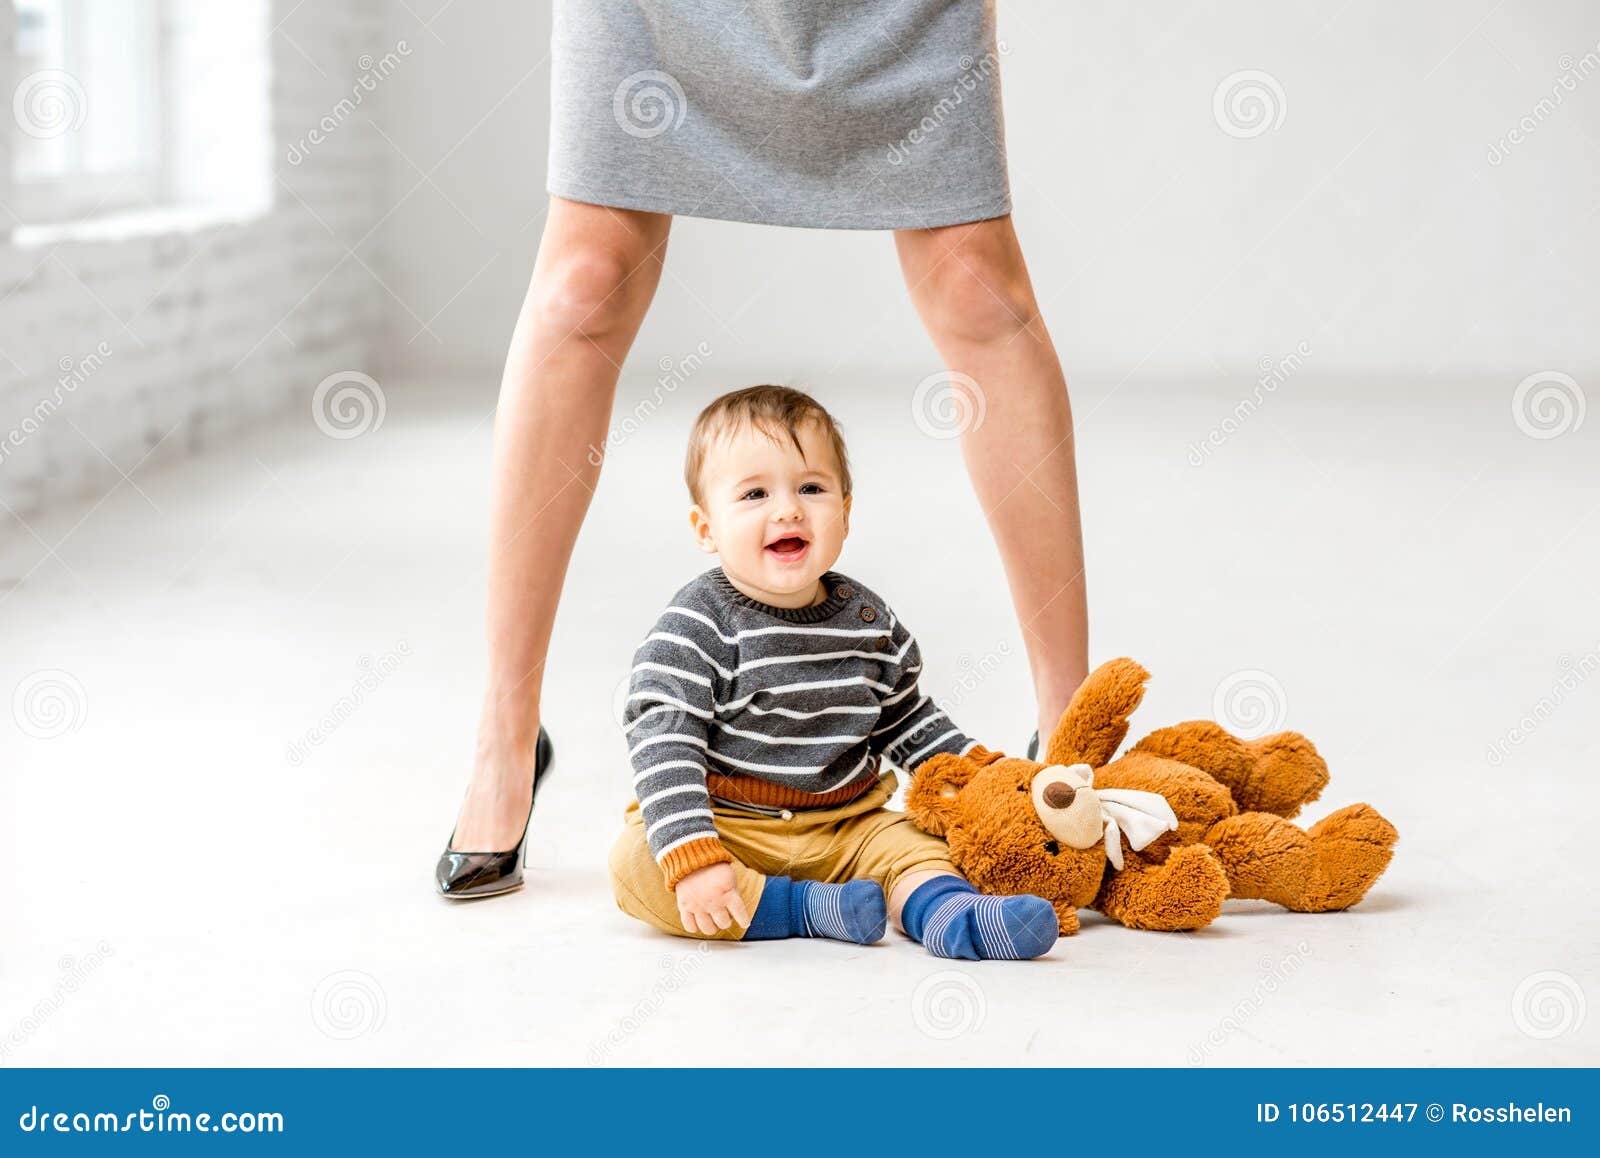 Включи мамочки ноги. Ребенок возле ноги. Мама и малыш возле ног картинки. Ребенок между маминых ног. Ребенок сидит у мамы на ноге.